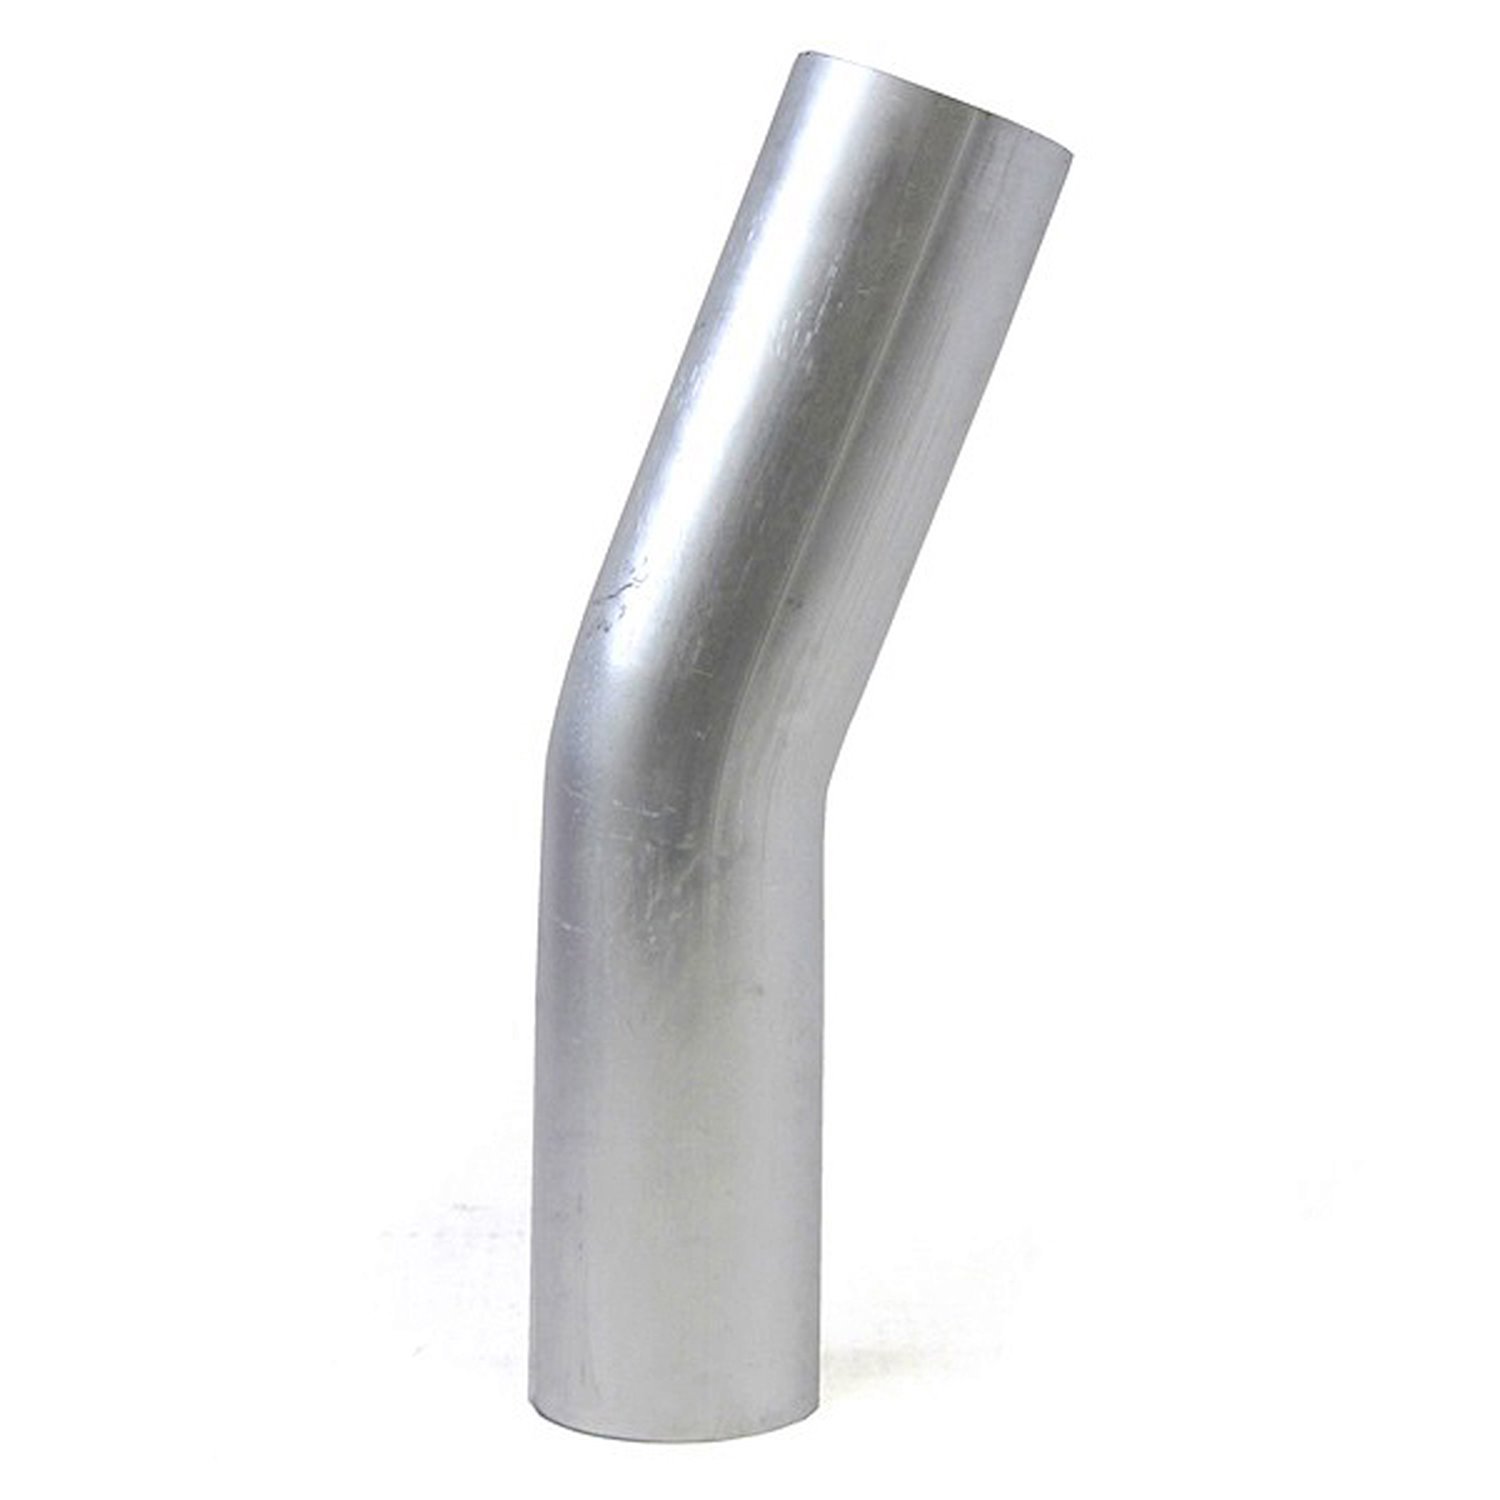 AT20-350-CLR-56 Aluminum Elbow Tube, 6061 Aluminum, 20-Degree Bend Elbow Tubing, 3-1/2 in. OD, Large Radius, 5-5/8 in. CLR